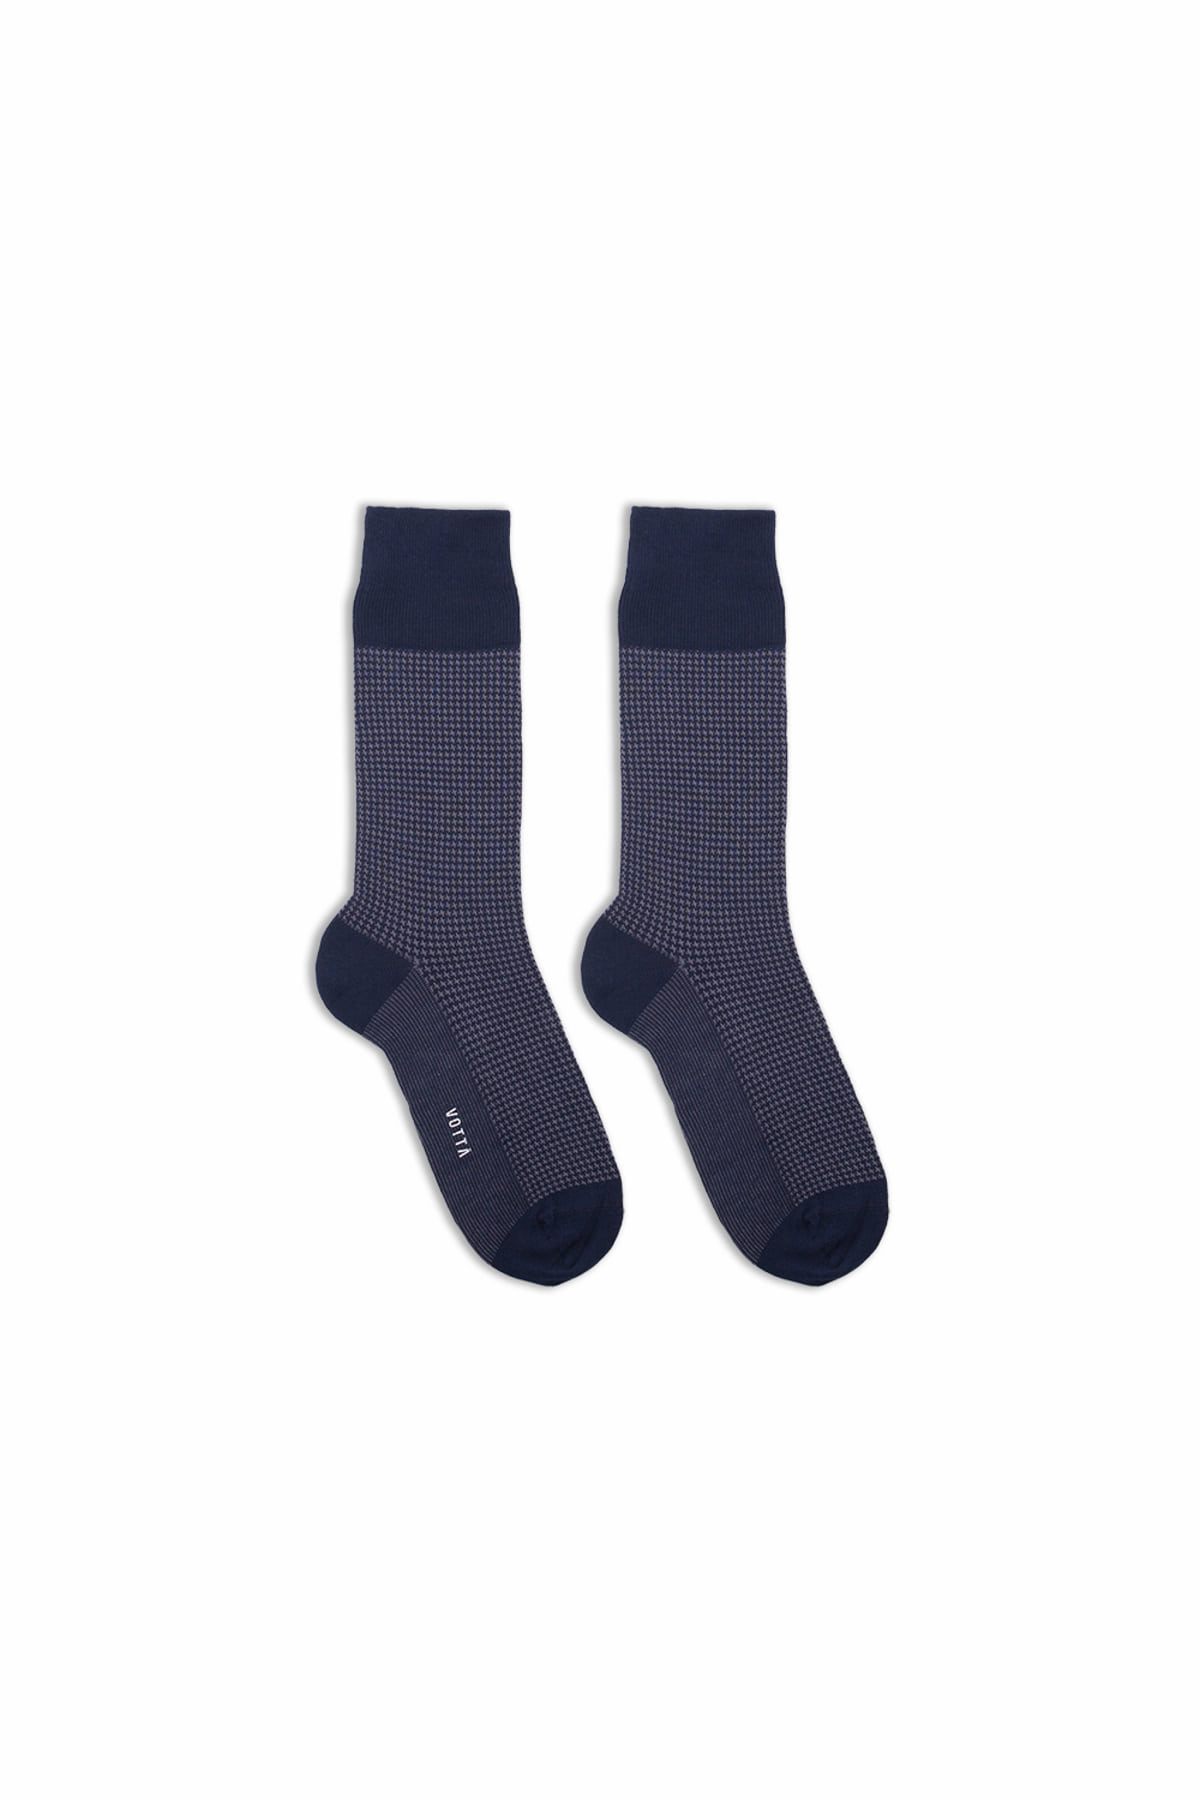 [VOTTA] Hound Tooth Socks - Navy/Gray